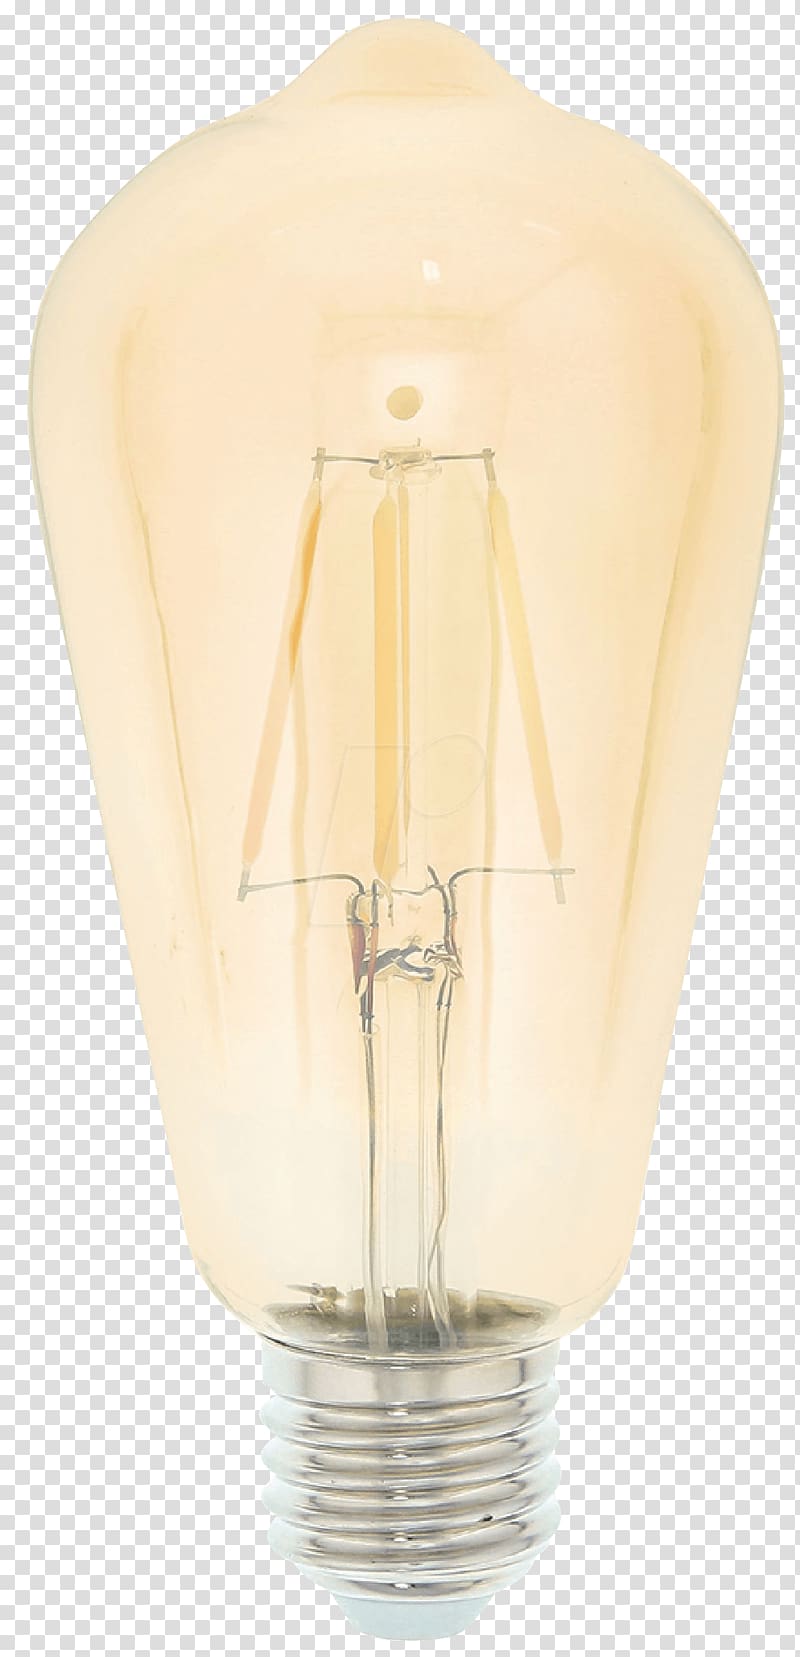 Incandescent light bulb LED filament Lighting LED lamp, led lamp transparent background PNG clipart